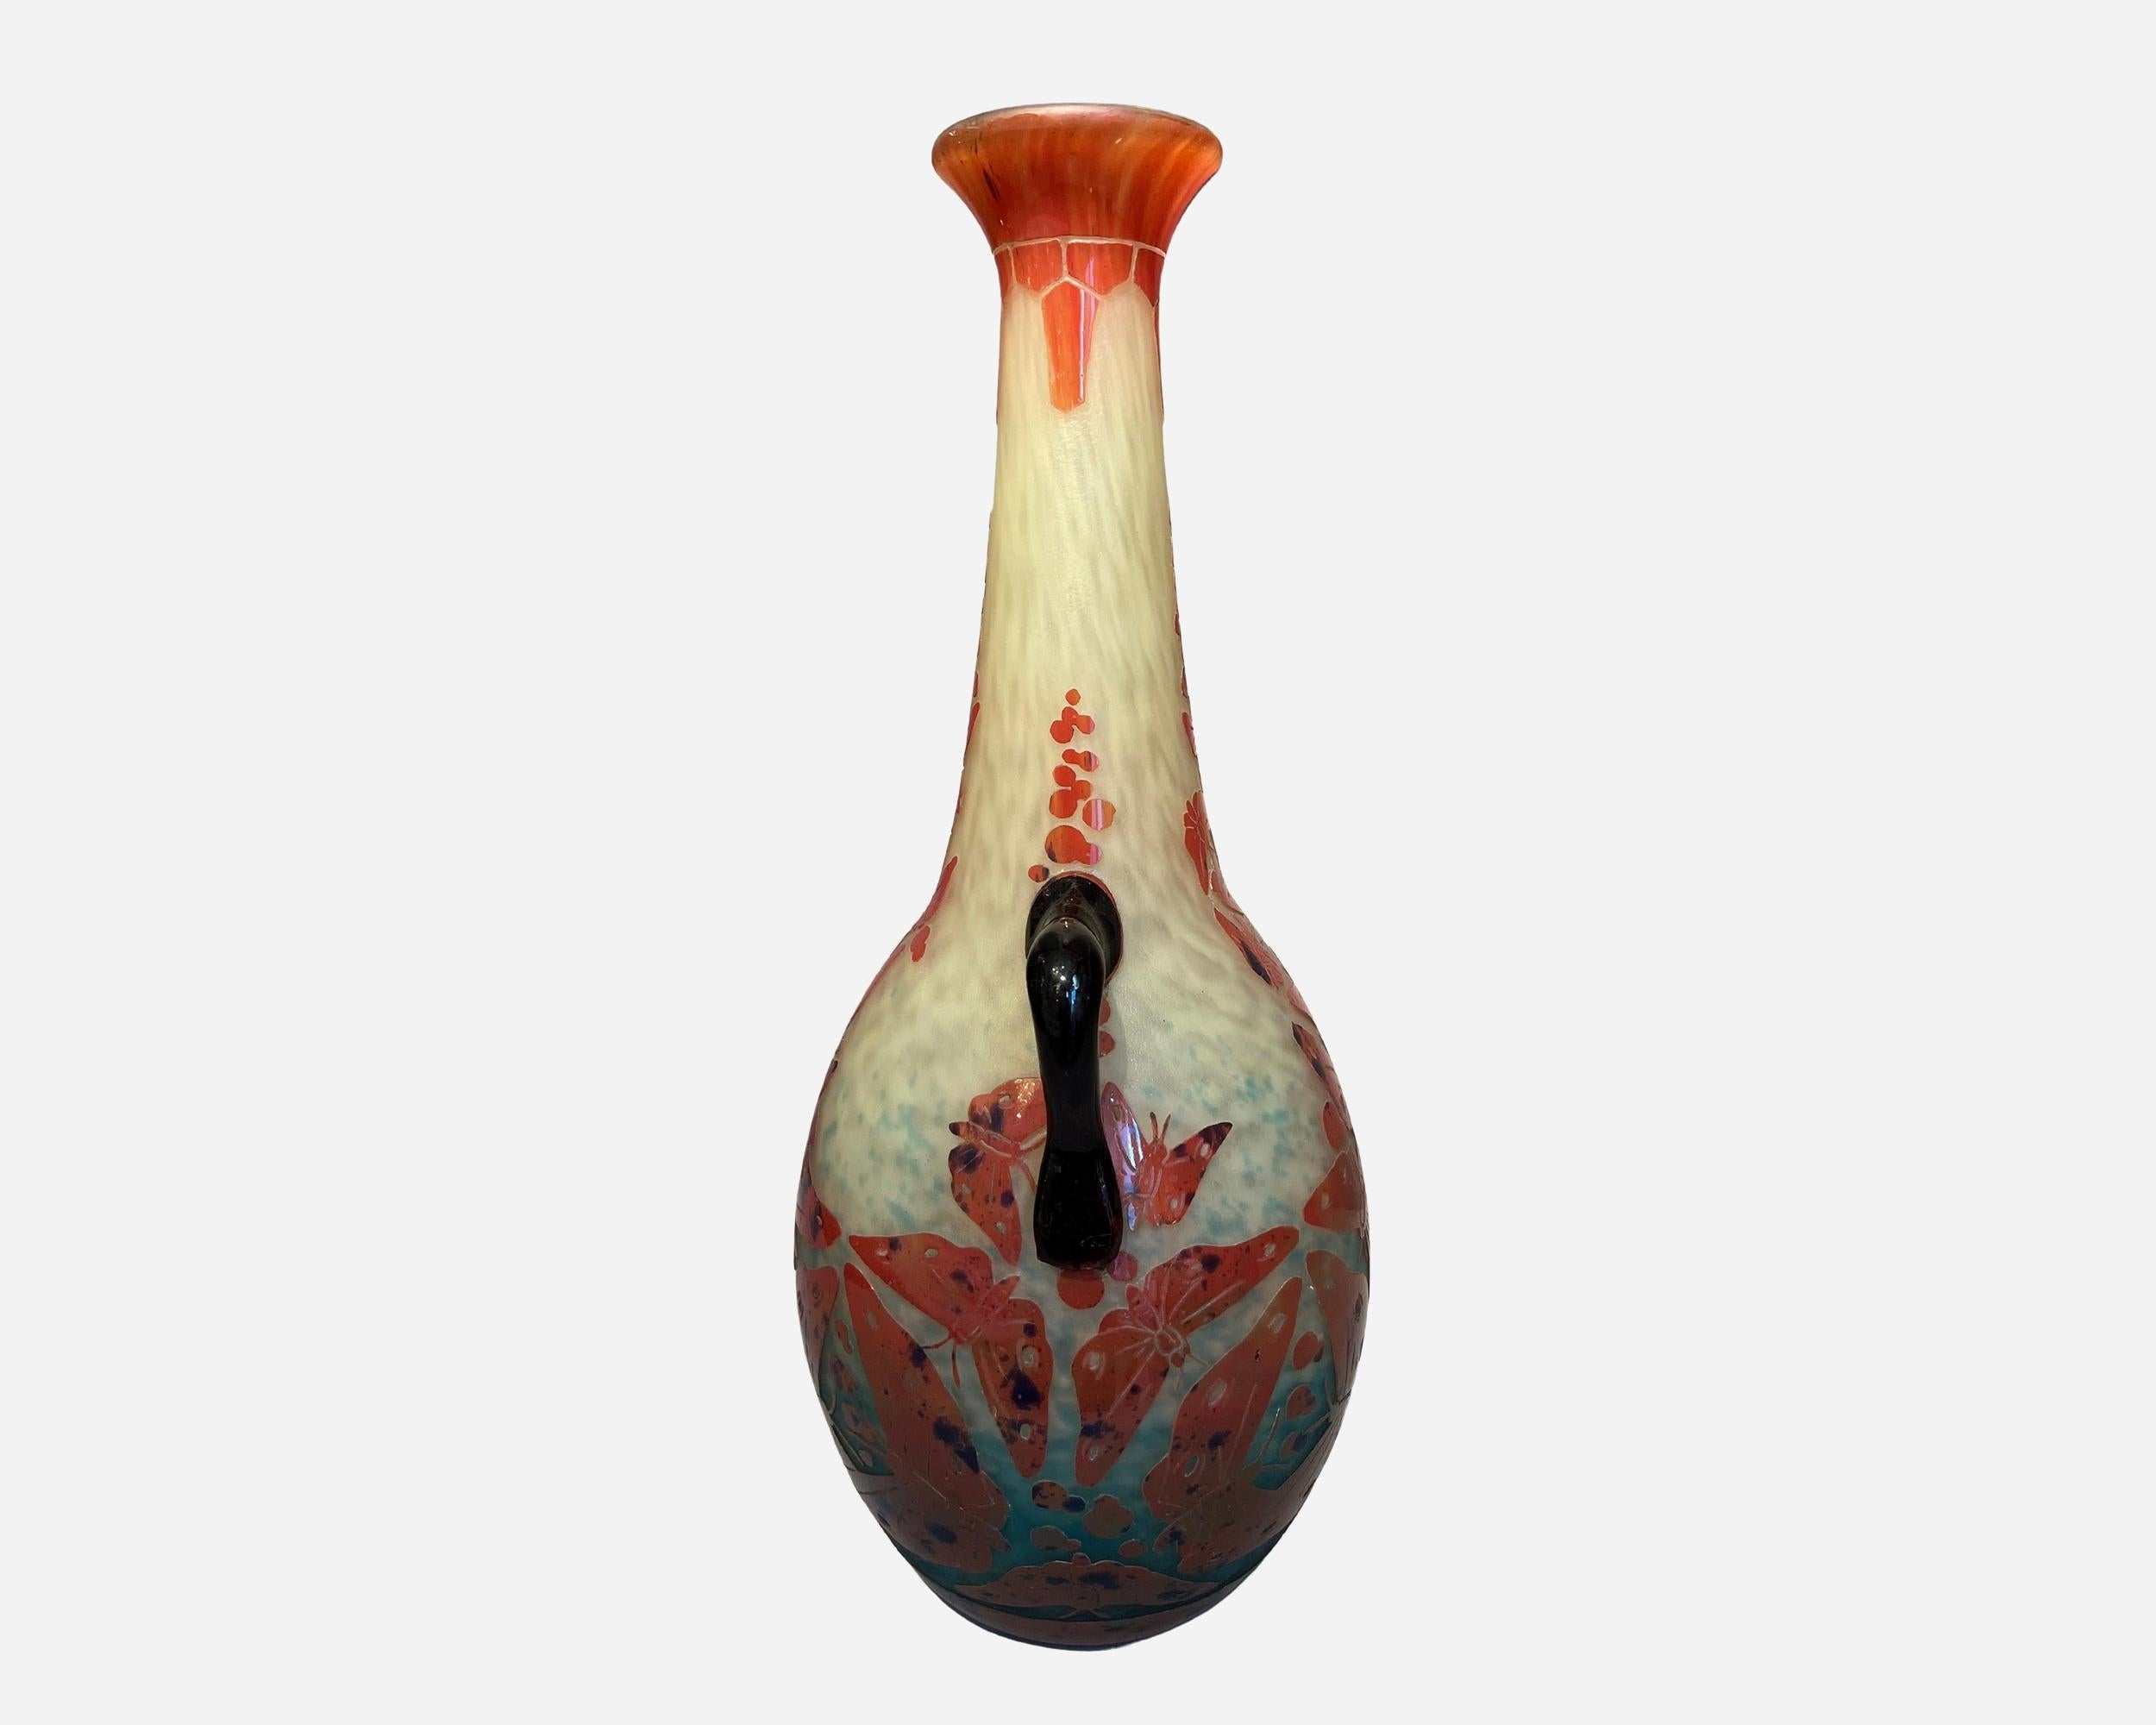 Grand vase à anses en verre multicouche gravé à l'acide, à décor de papillons tournants, rouges et mouchetés de bleu marine sur fond marmoréen jaune et bleu ciel.
Signé 